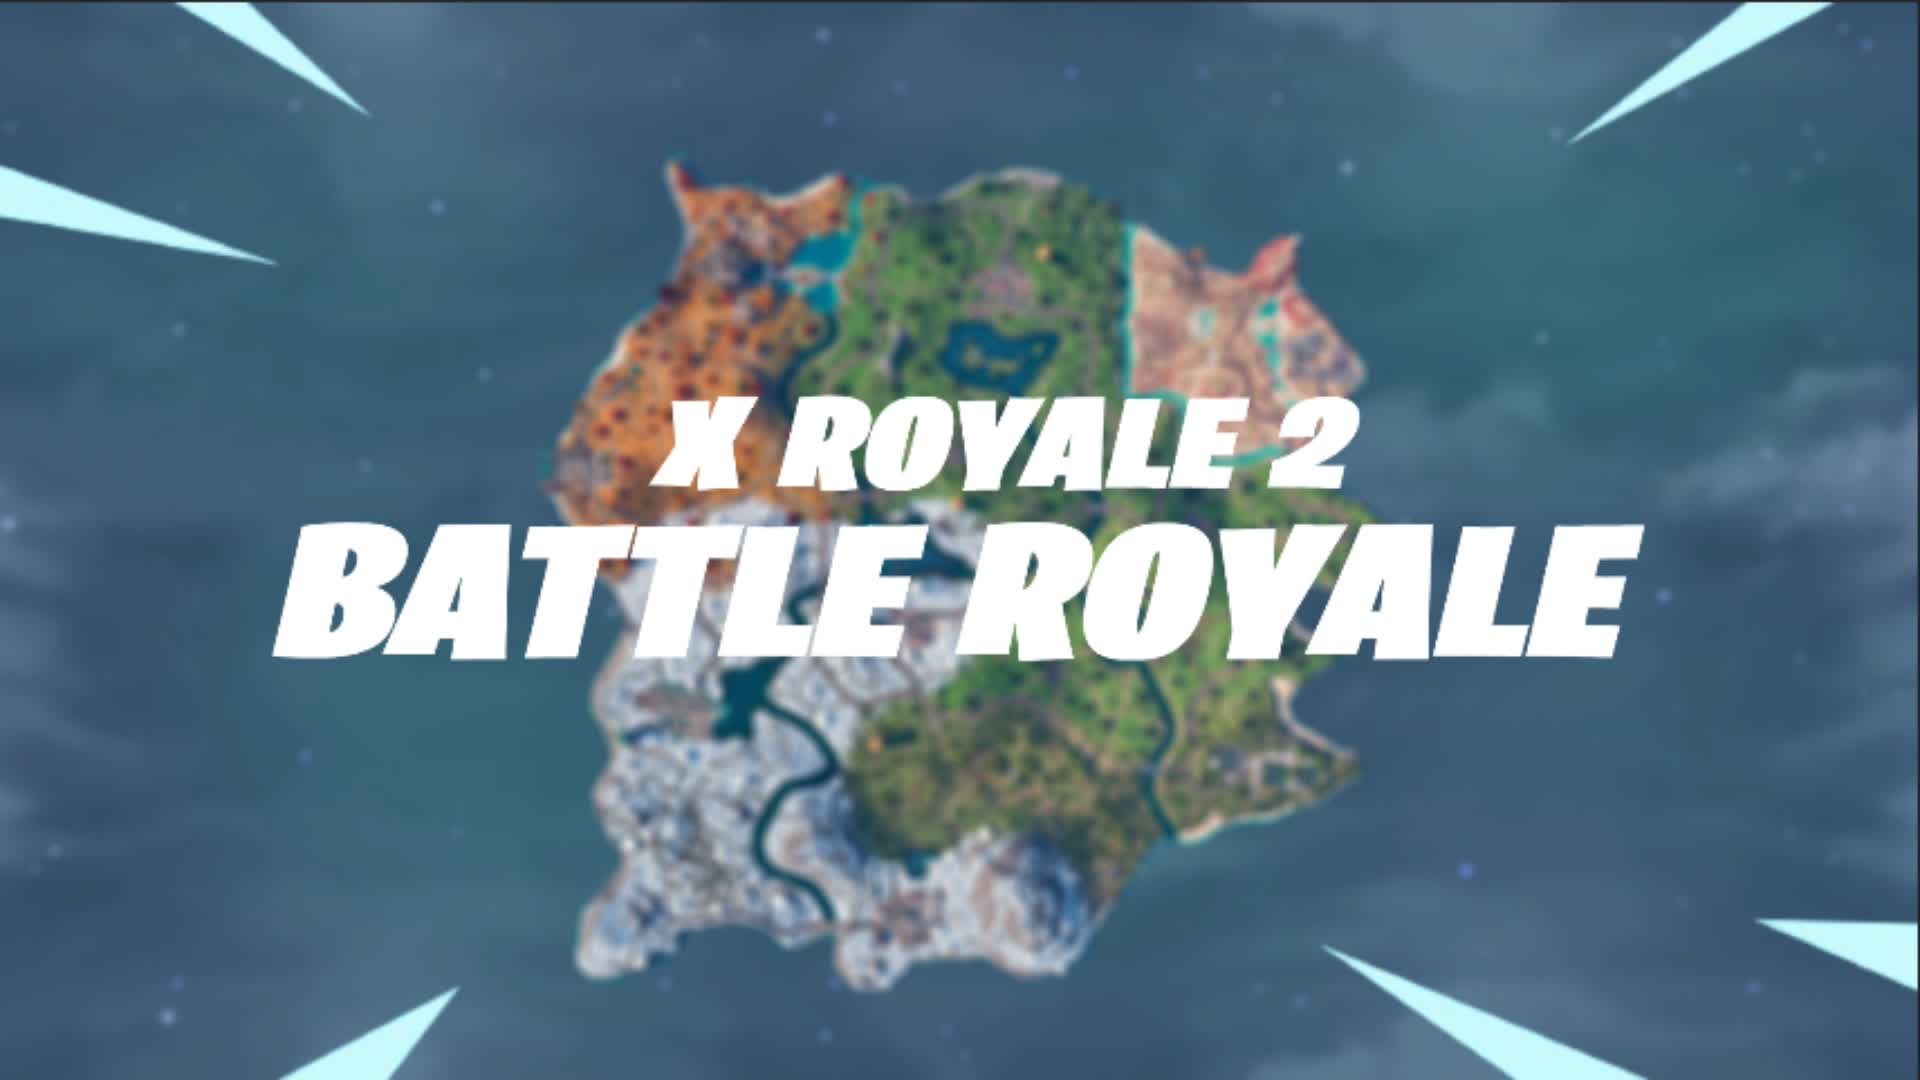 【注目の島】Battle Royale: X Royale 2